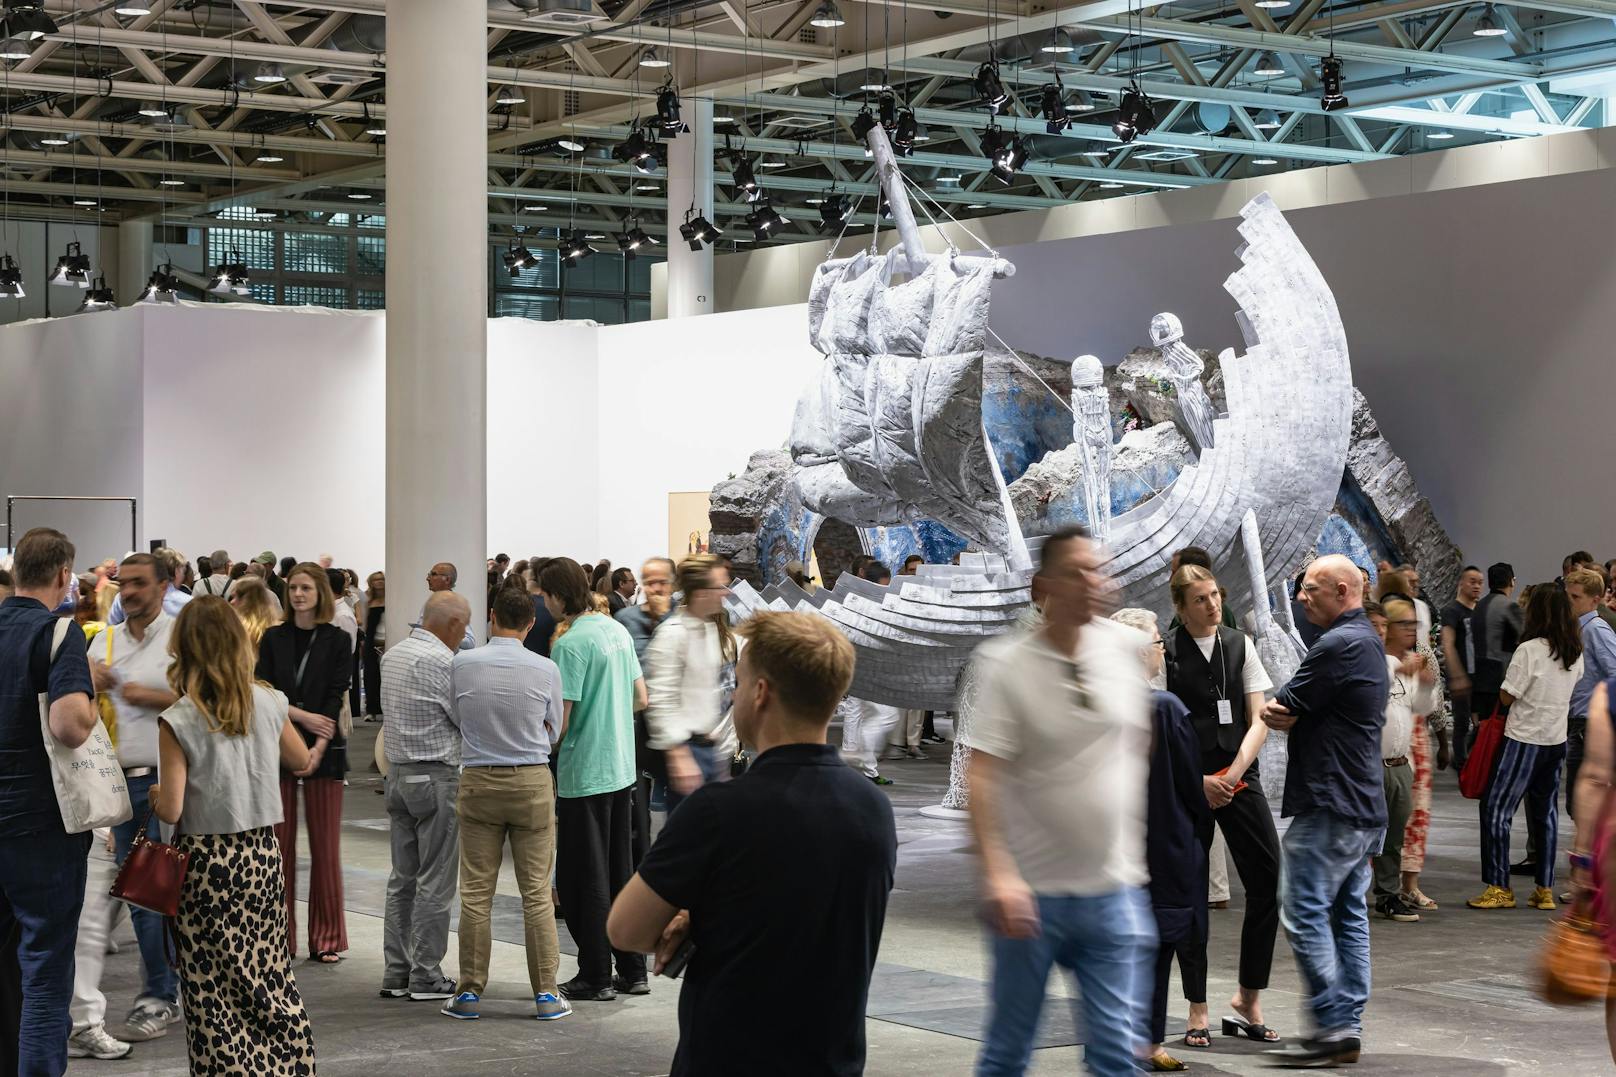 Die Art Basel findet vom 15. Juni bis 18. Juni statt. Mehr als 4.000 Künstler und Künstlerinnen von fünf Kontinenten zeigen ihre Kunst. Über 200 Galerien aus 36 Ländern sind auf der renommierten Kunstmesse vertreten. 